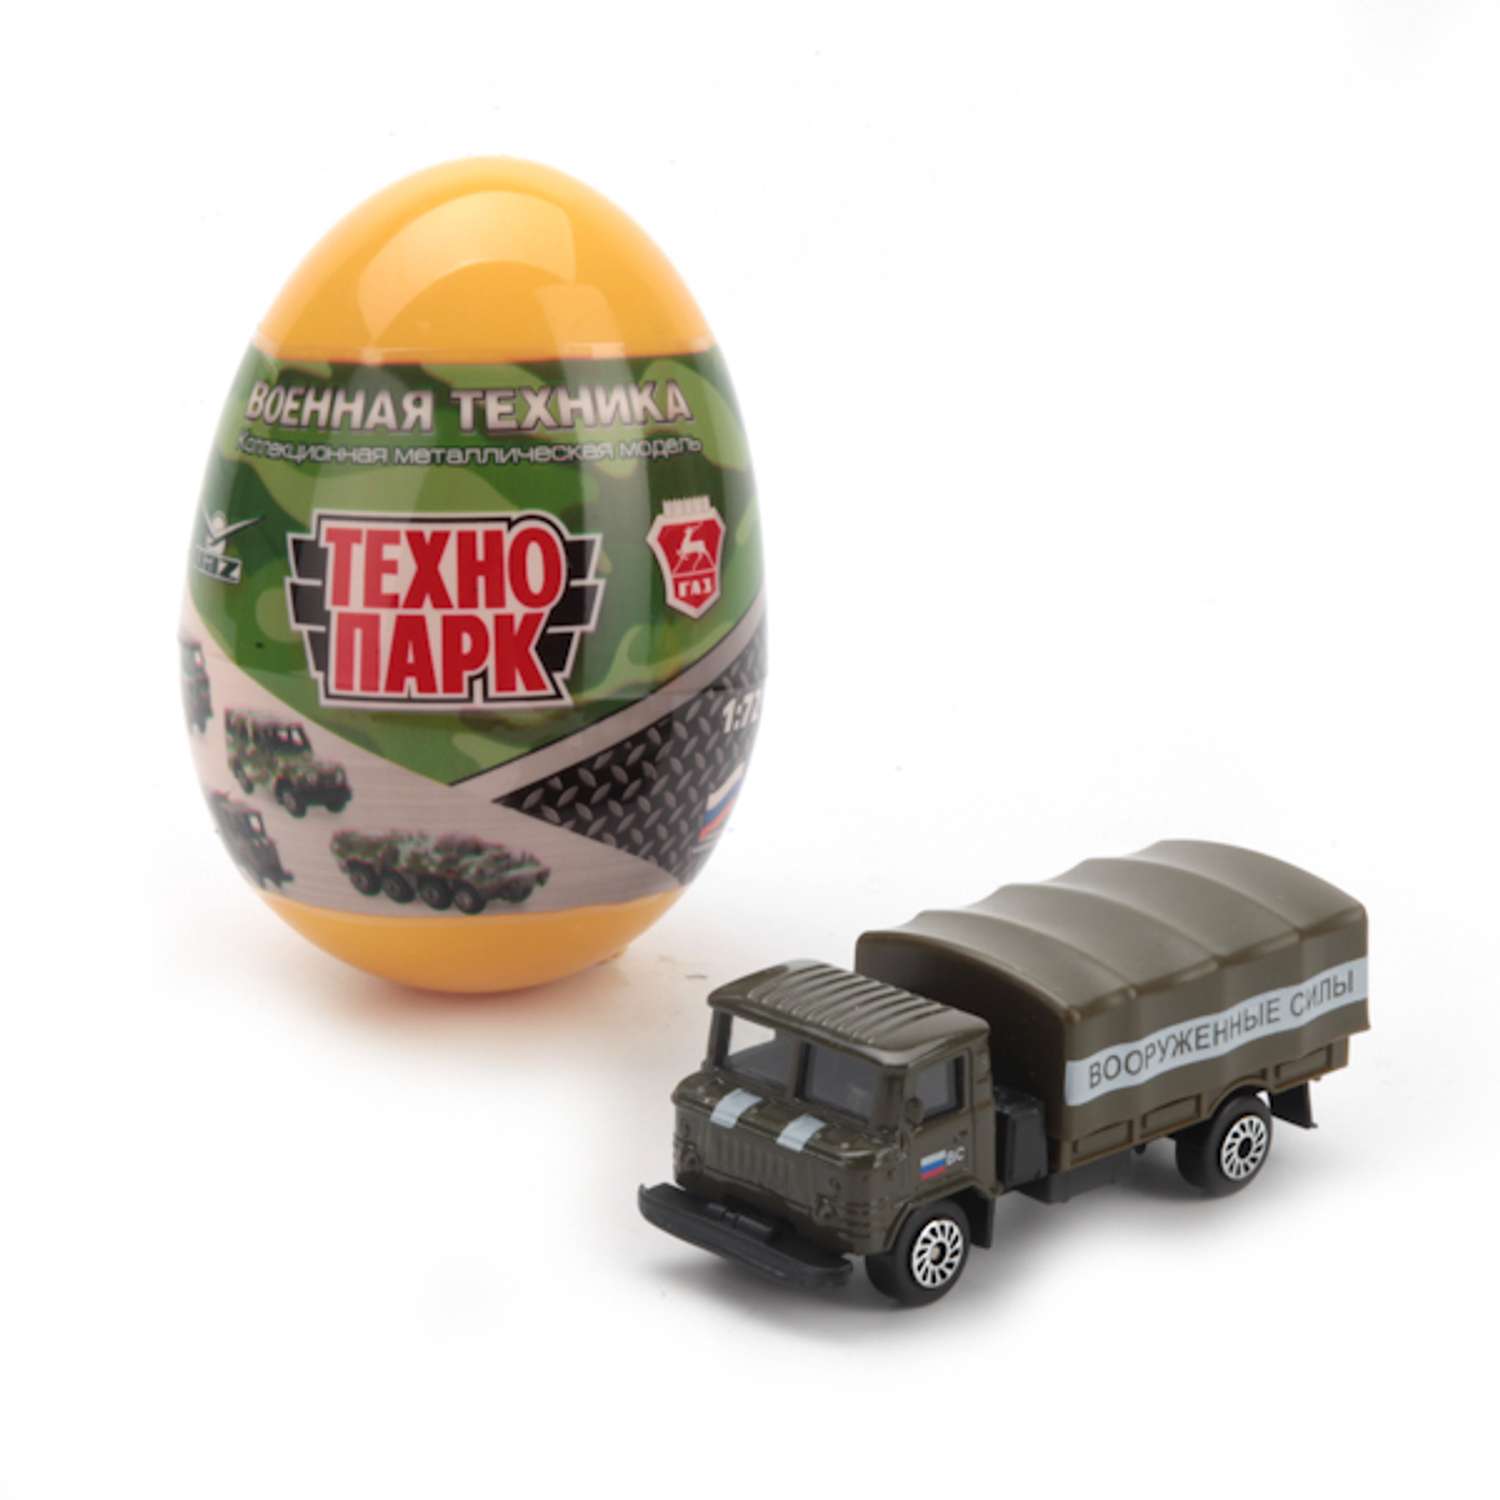 Реклама машинки для яиц. Машинка Технопарк Стройтехника в яйце (SB-16-95) 7.5 см. Технопарк игрушки Военная техника 1 72. Технопарк Военная техника игрушки.